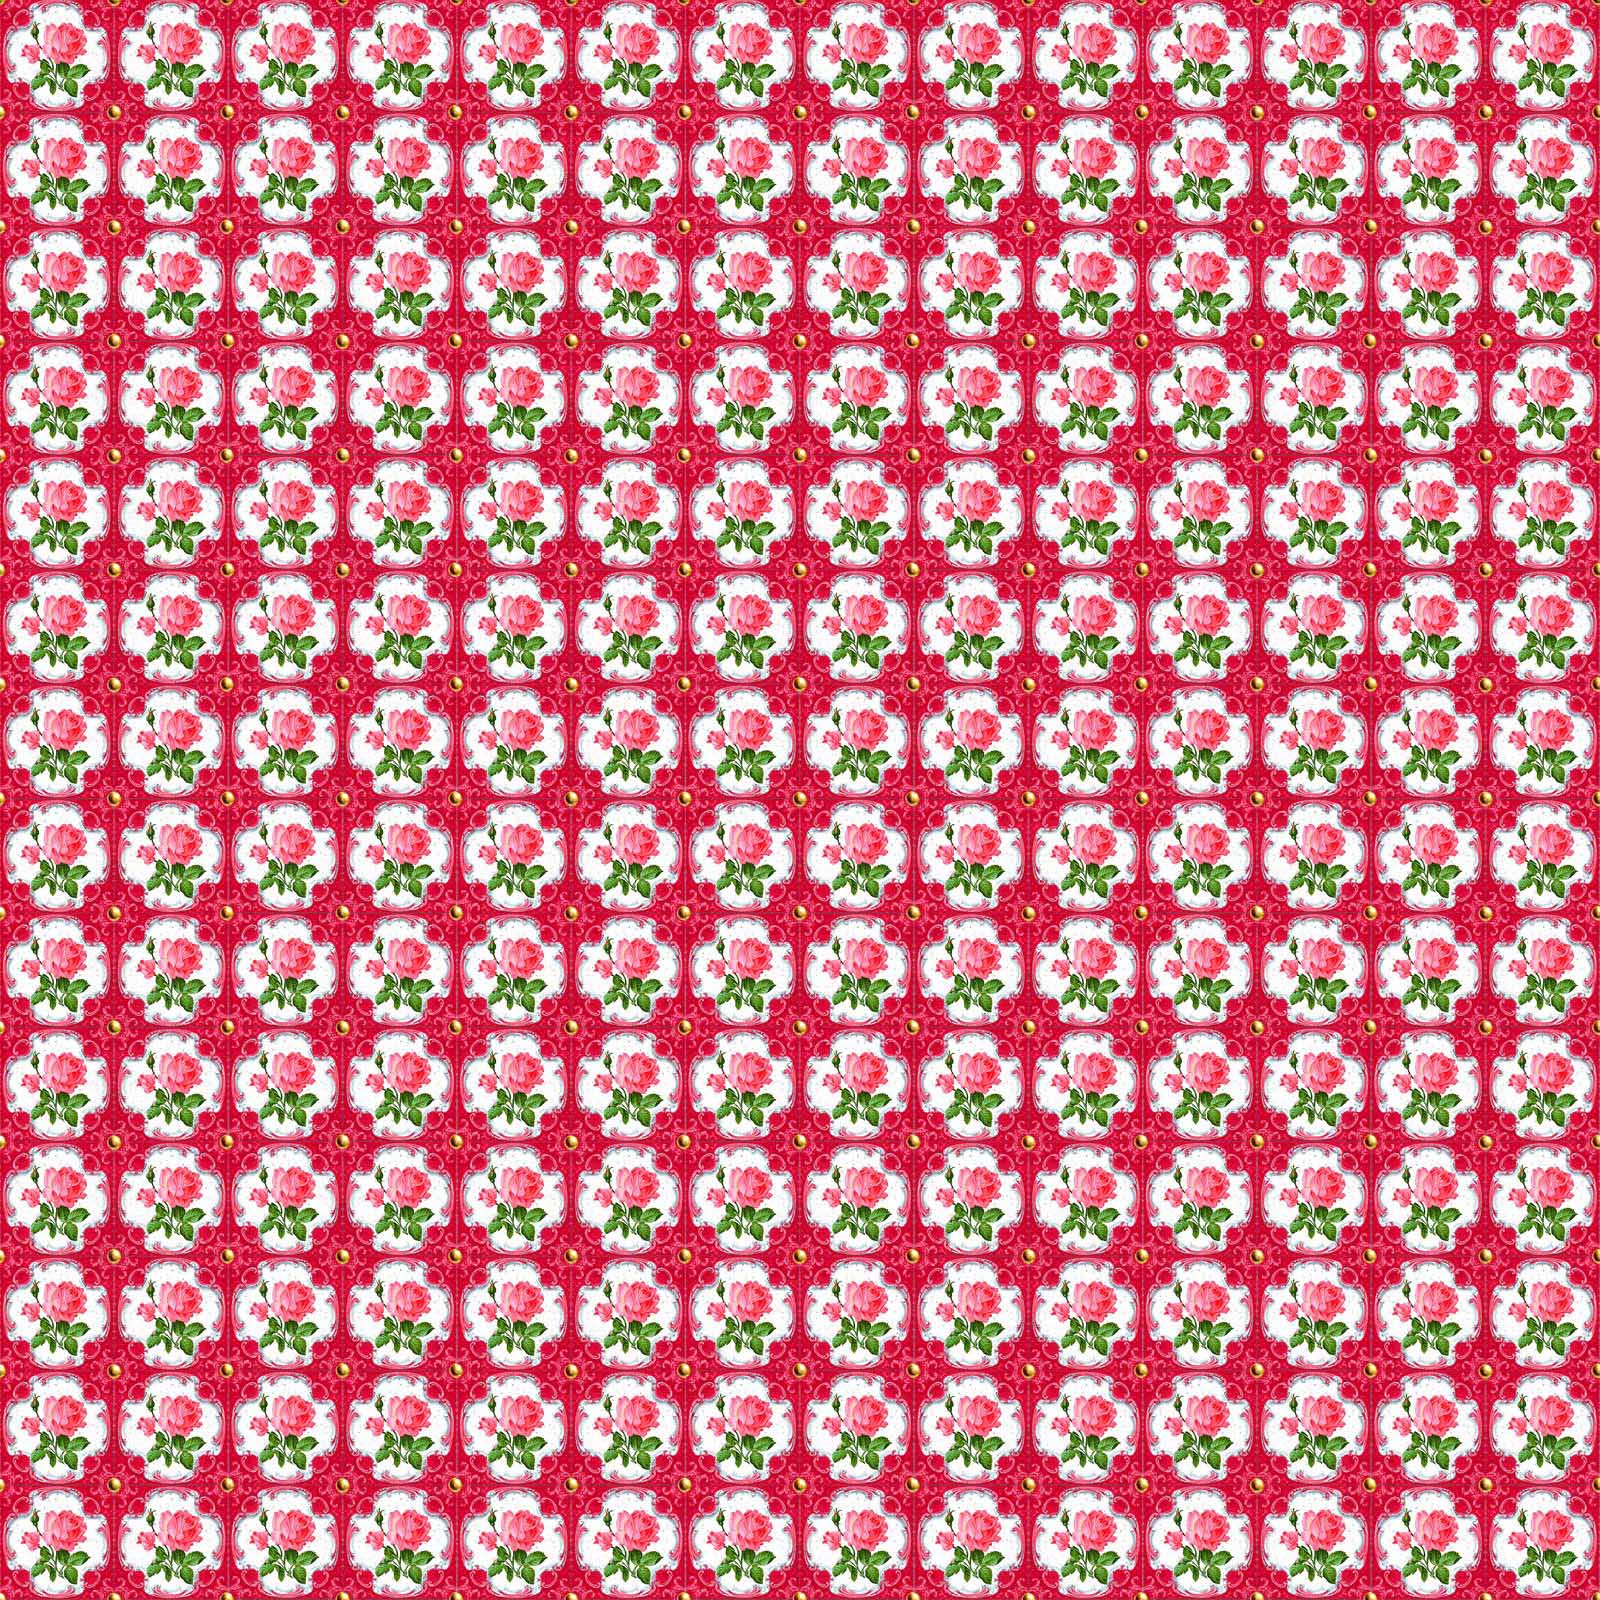 Vaessen Creative • CoCo-ton katoen stof 45x50cm so cute roze bloemen motief